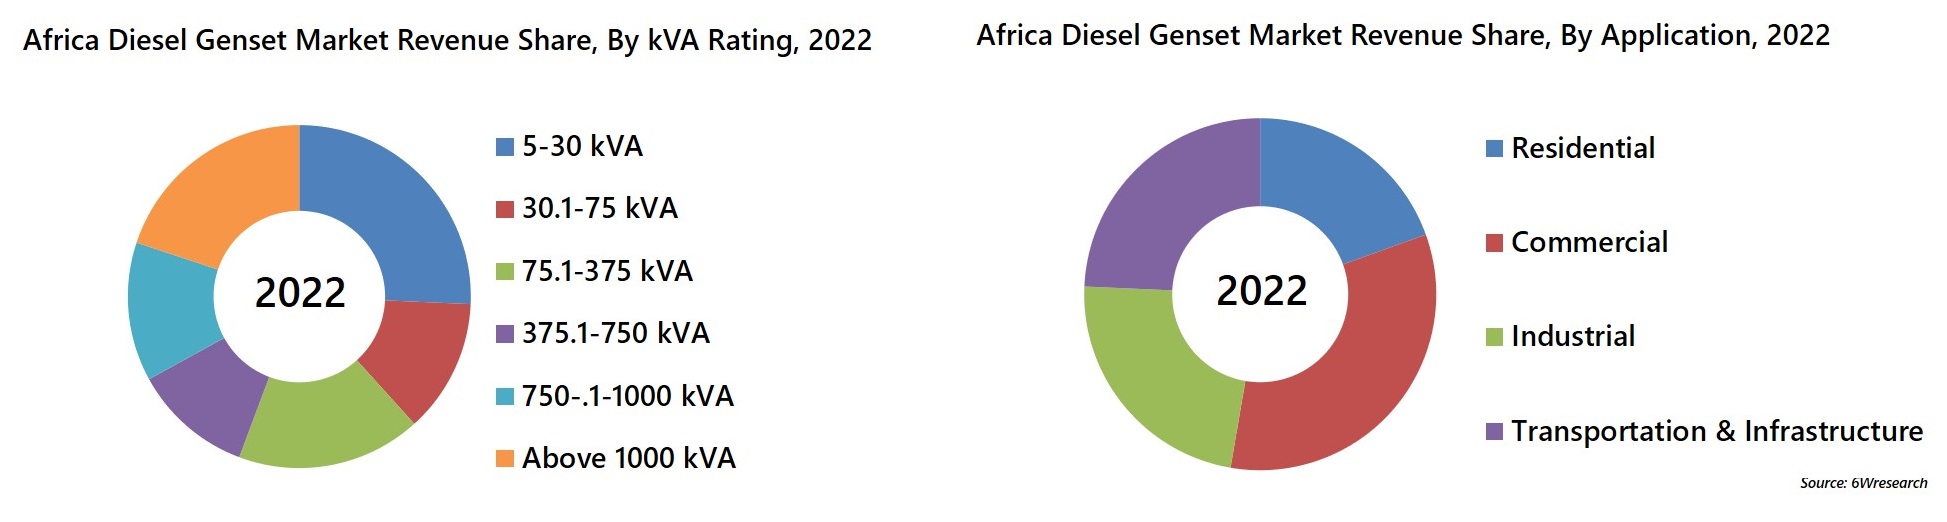 Africa Diesel Genset Market